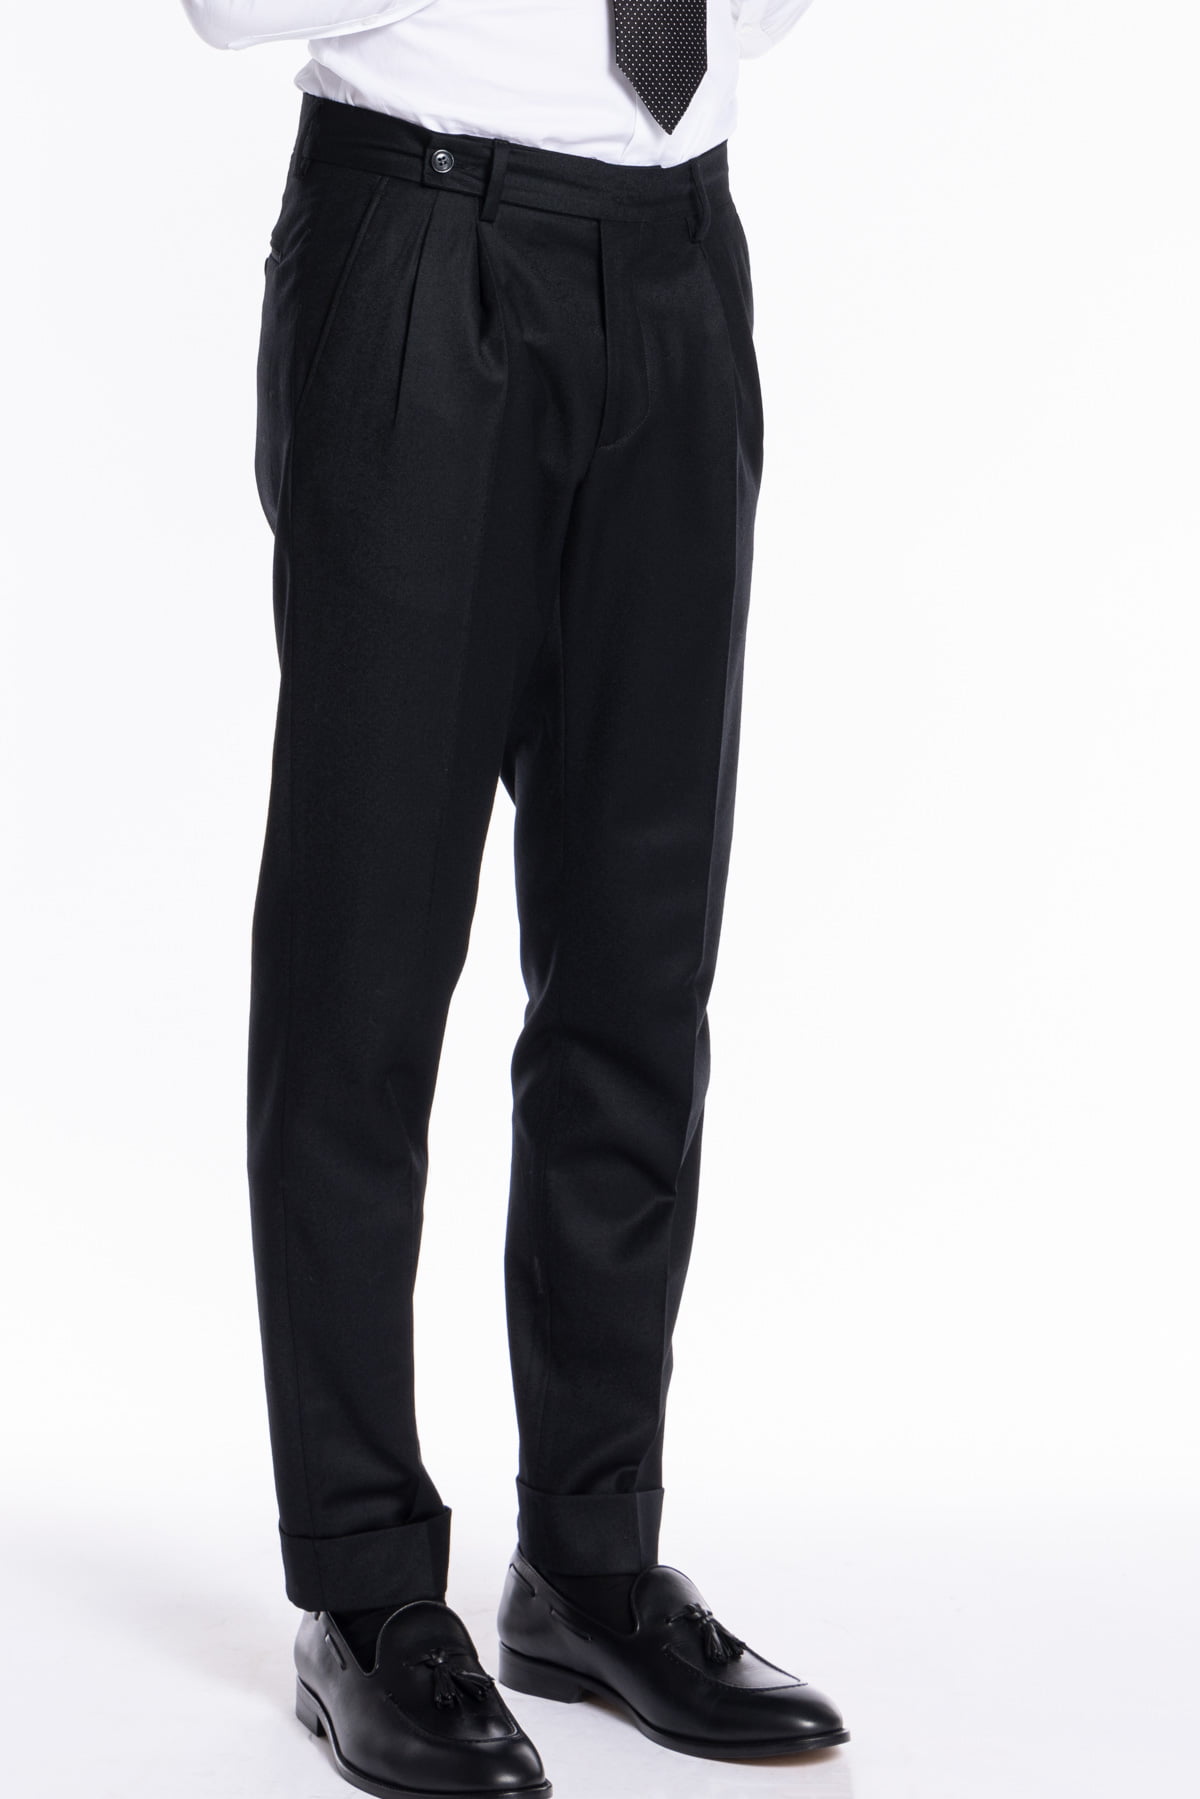 Pantalone uomo nero in lana e cashmere chiusura prolungata doppia pinces Bristol Tessuti Napoli